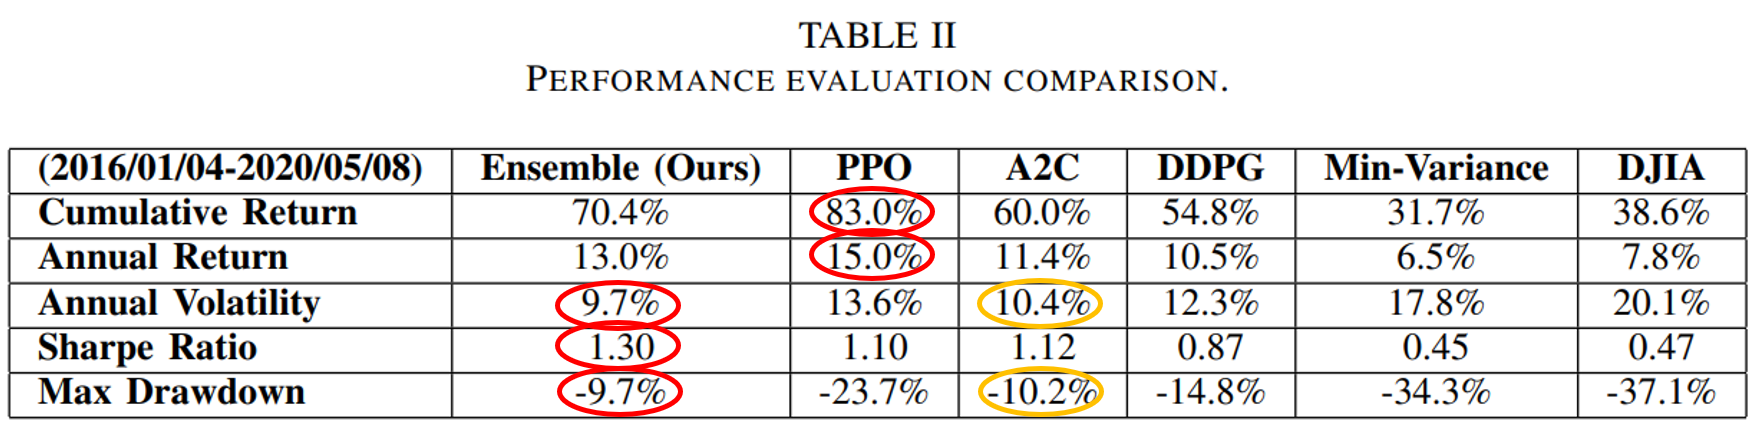 Table 2 - Performance Evaluation Comparison.